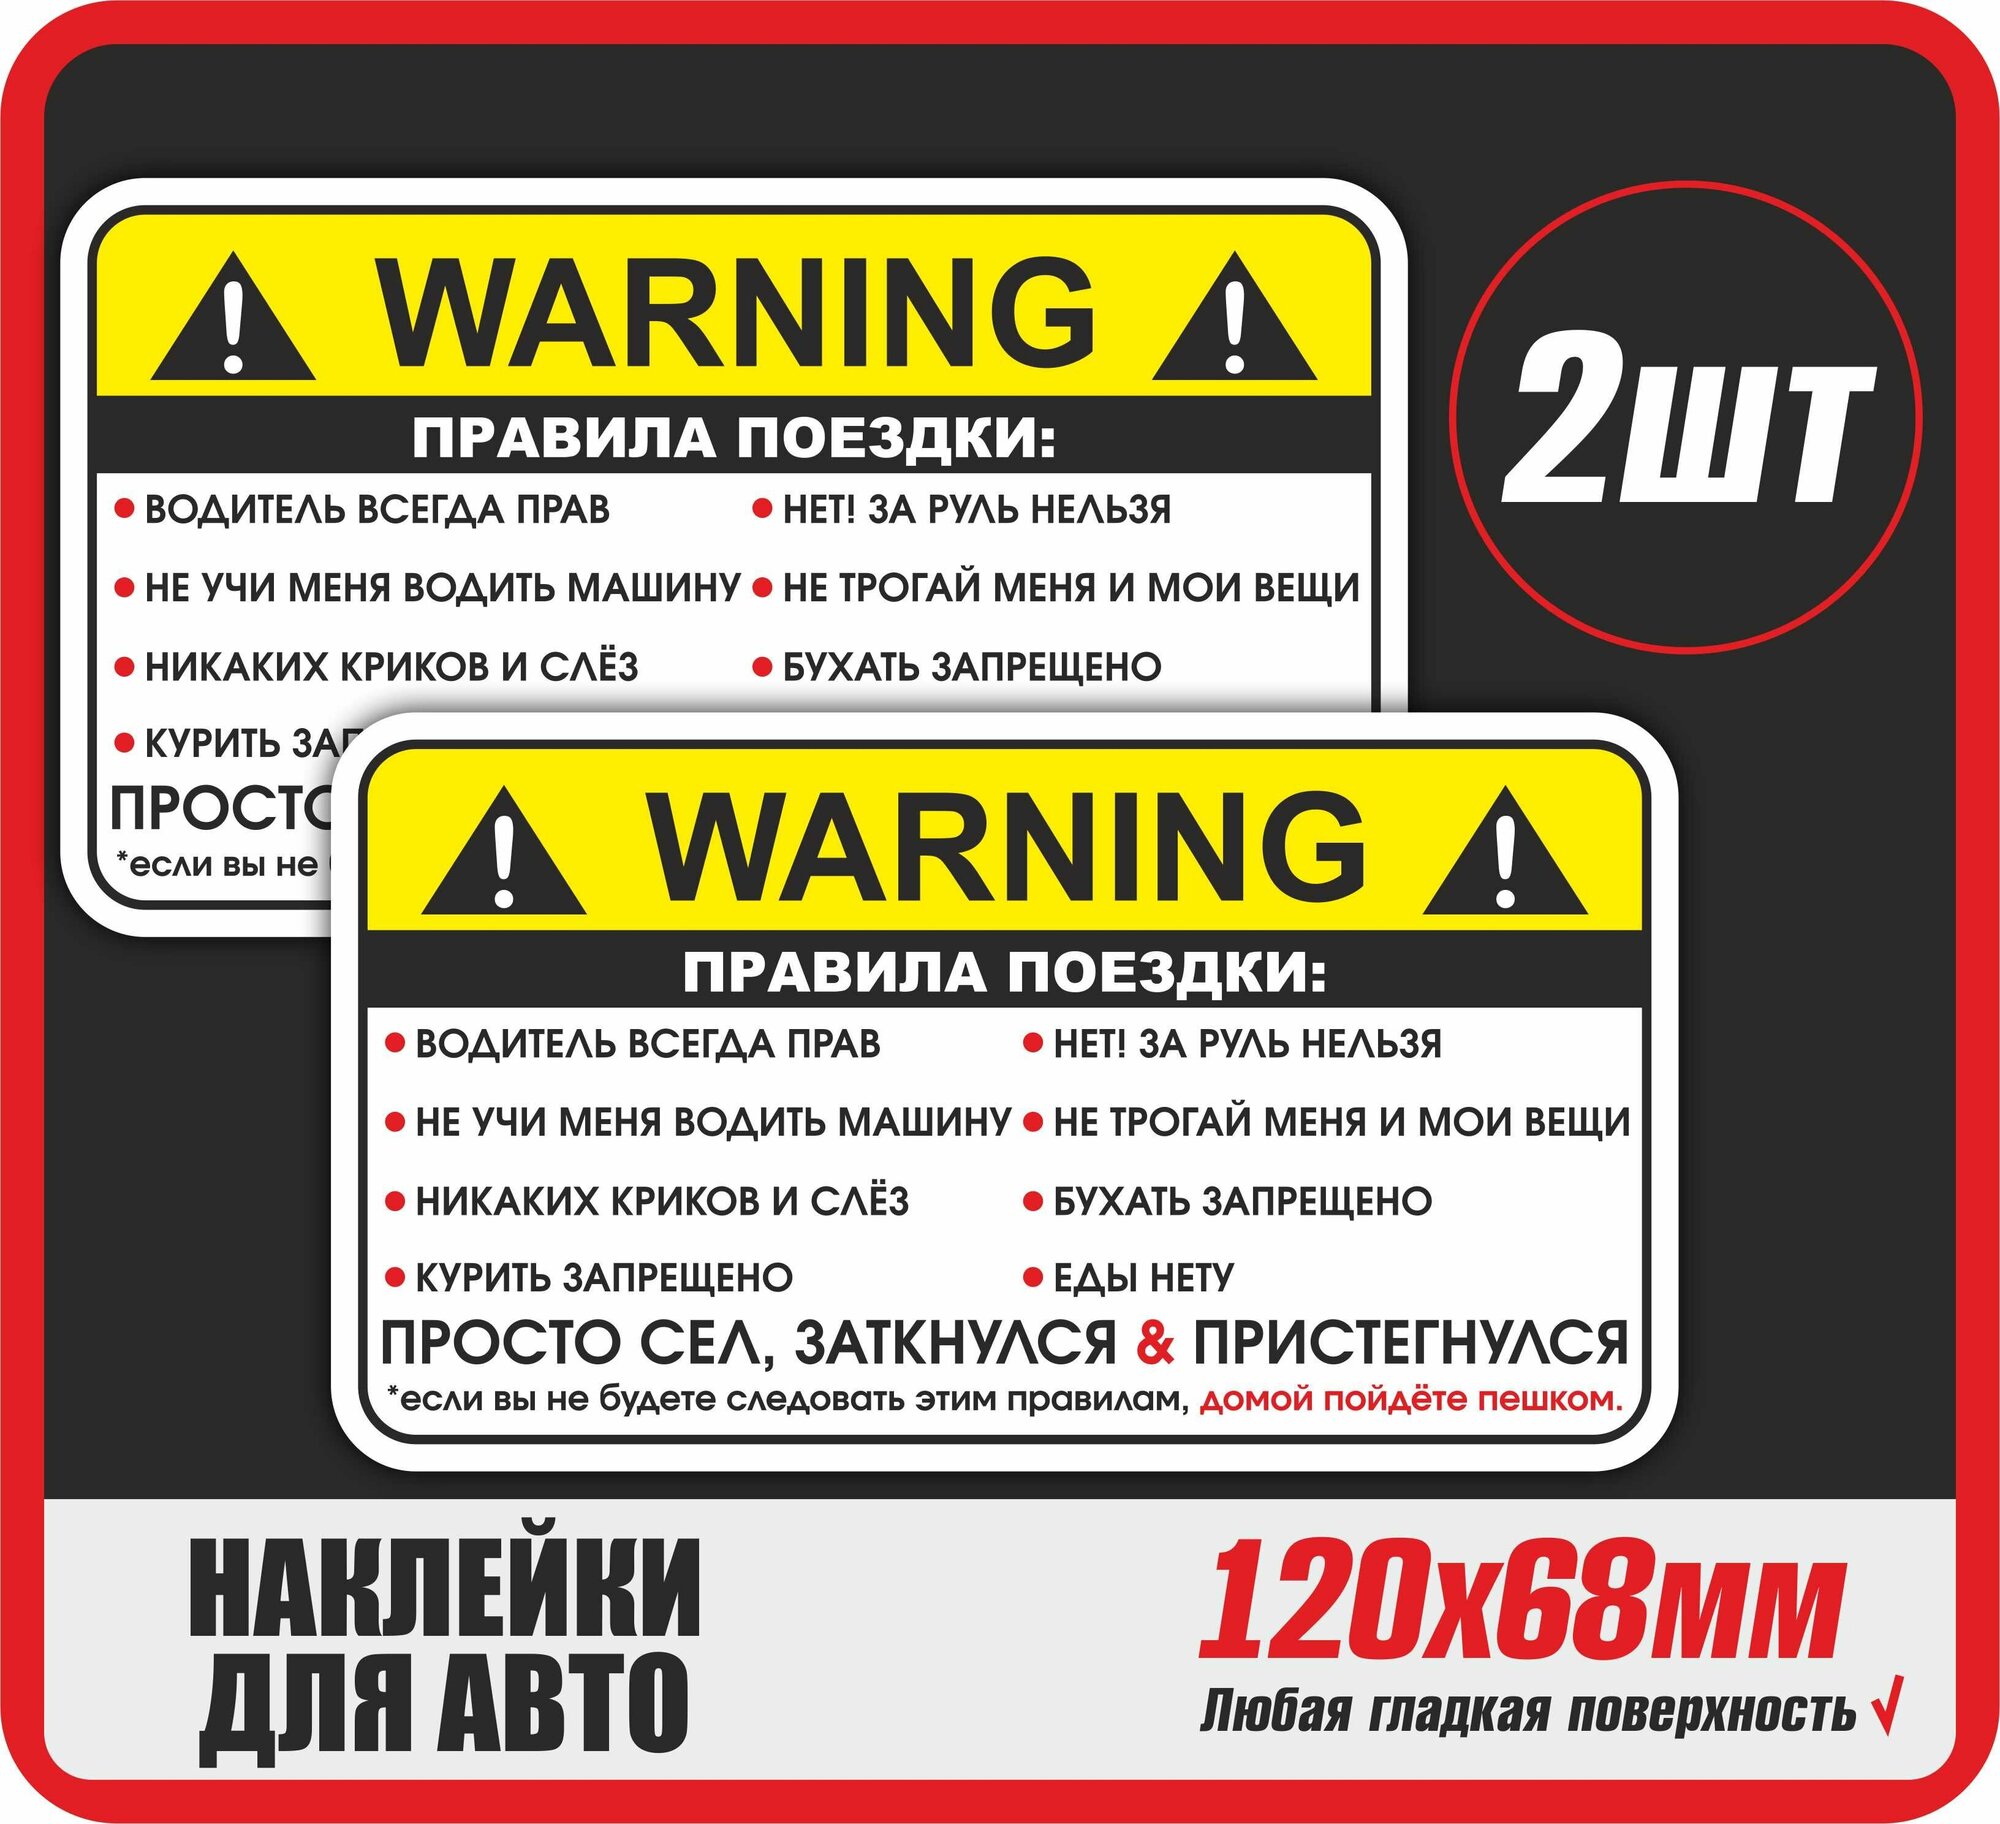 Наклейка на авто Warning Правила поездки пассажира 120х68 мм 2шт в комплекте